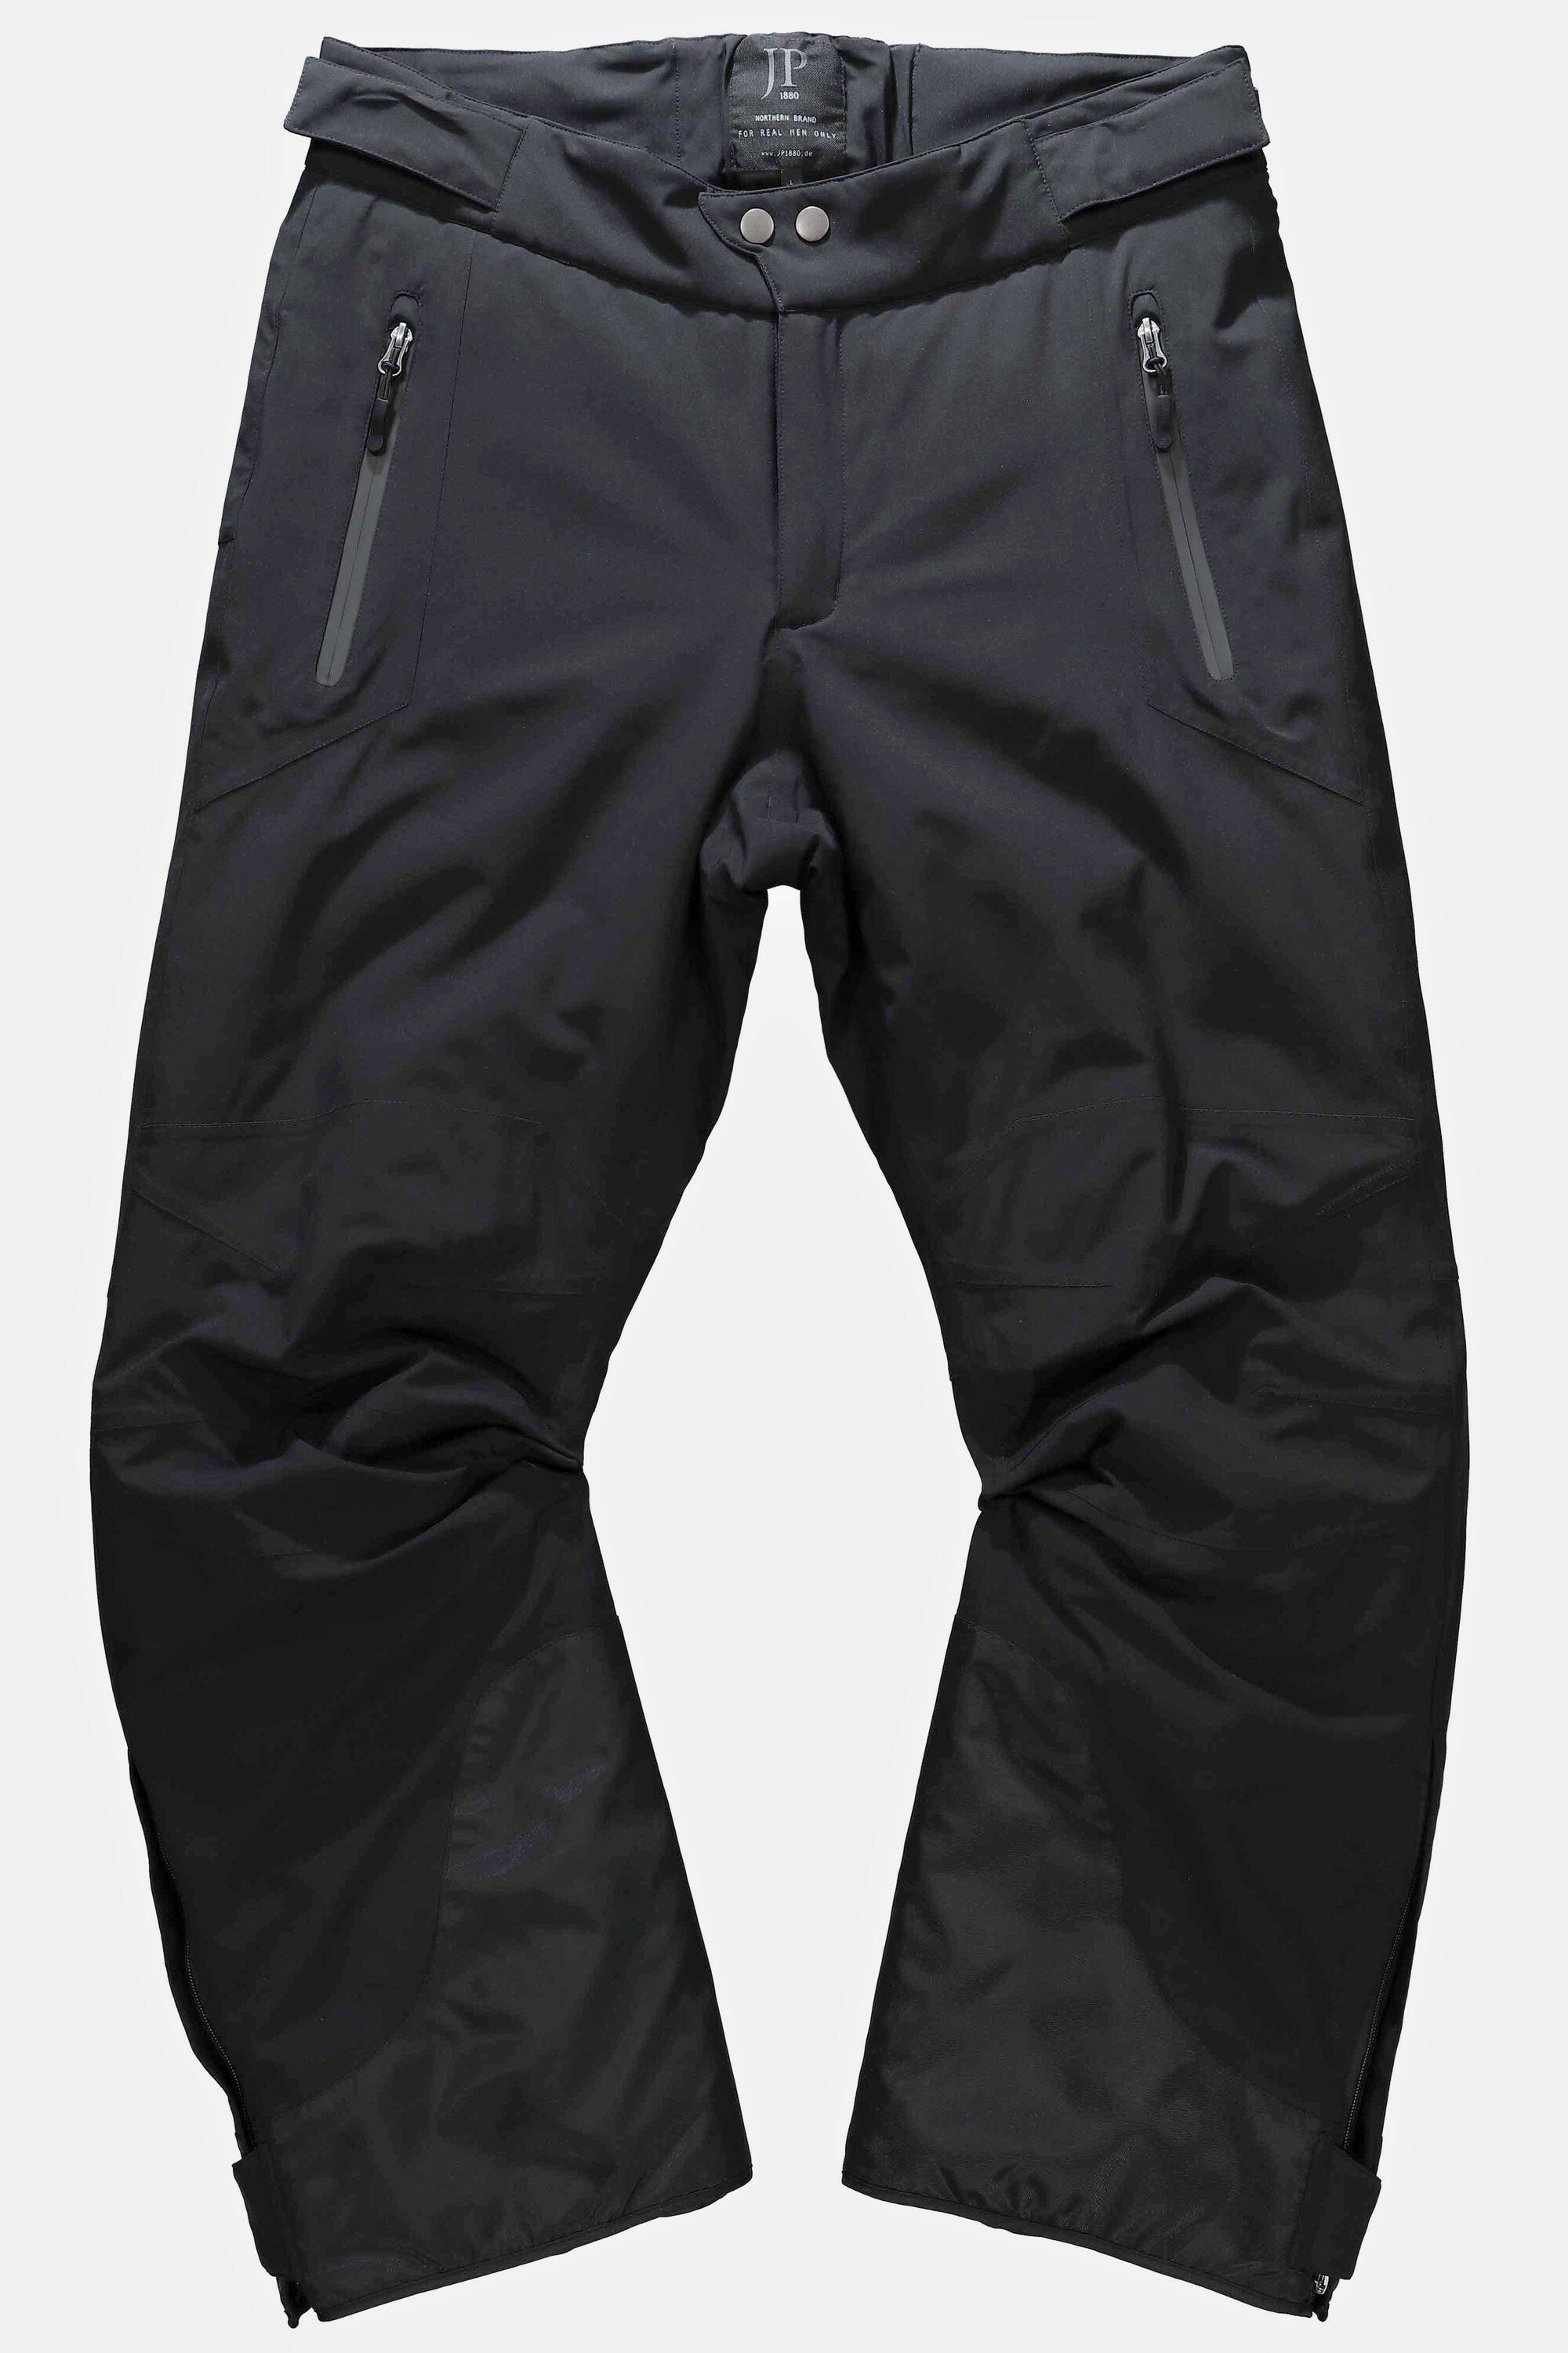 Skihose Funktions-Qualität Bauchfit Skihose JP1880 schwarz Skiwear